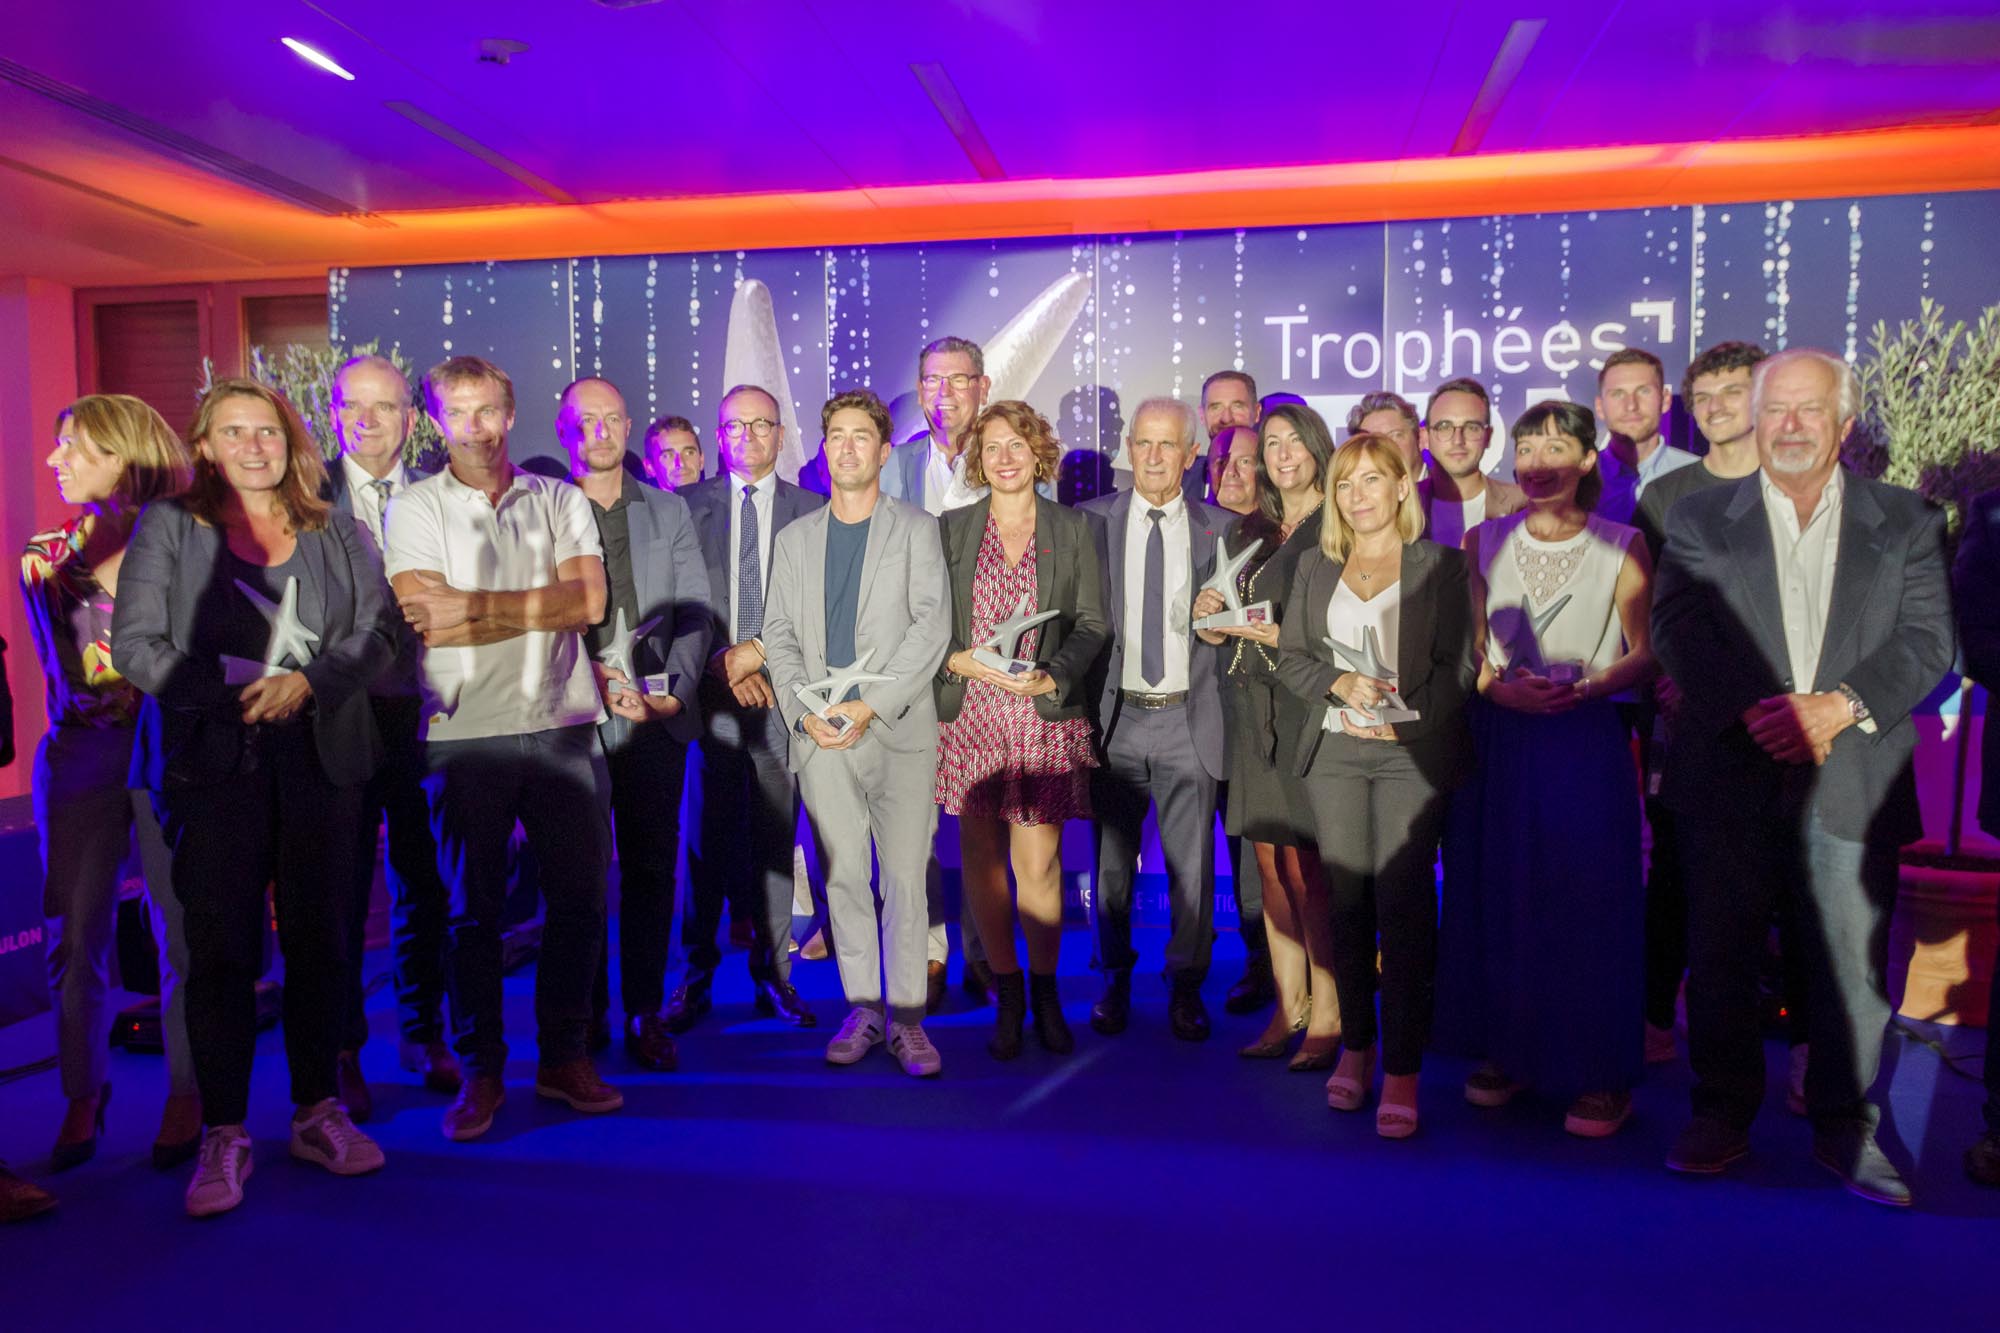 4e Trophée du Technopôle 2022